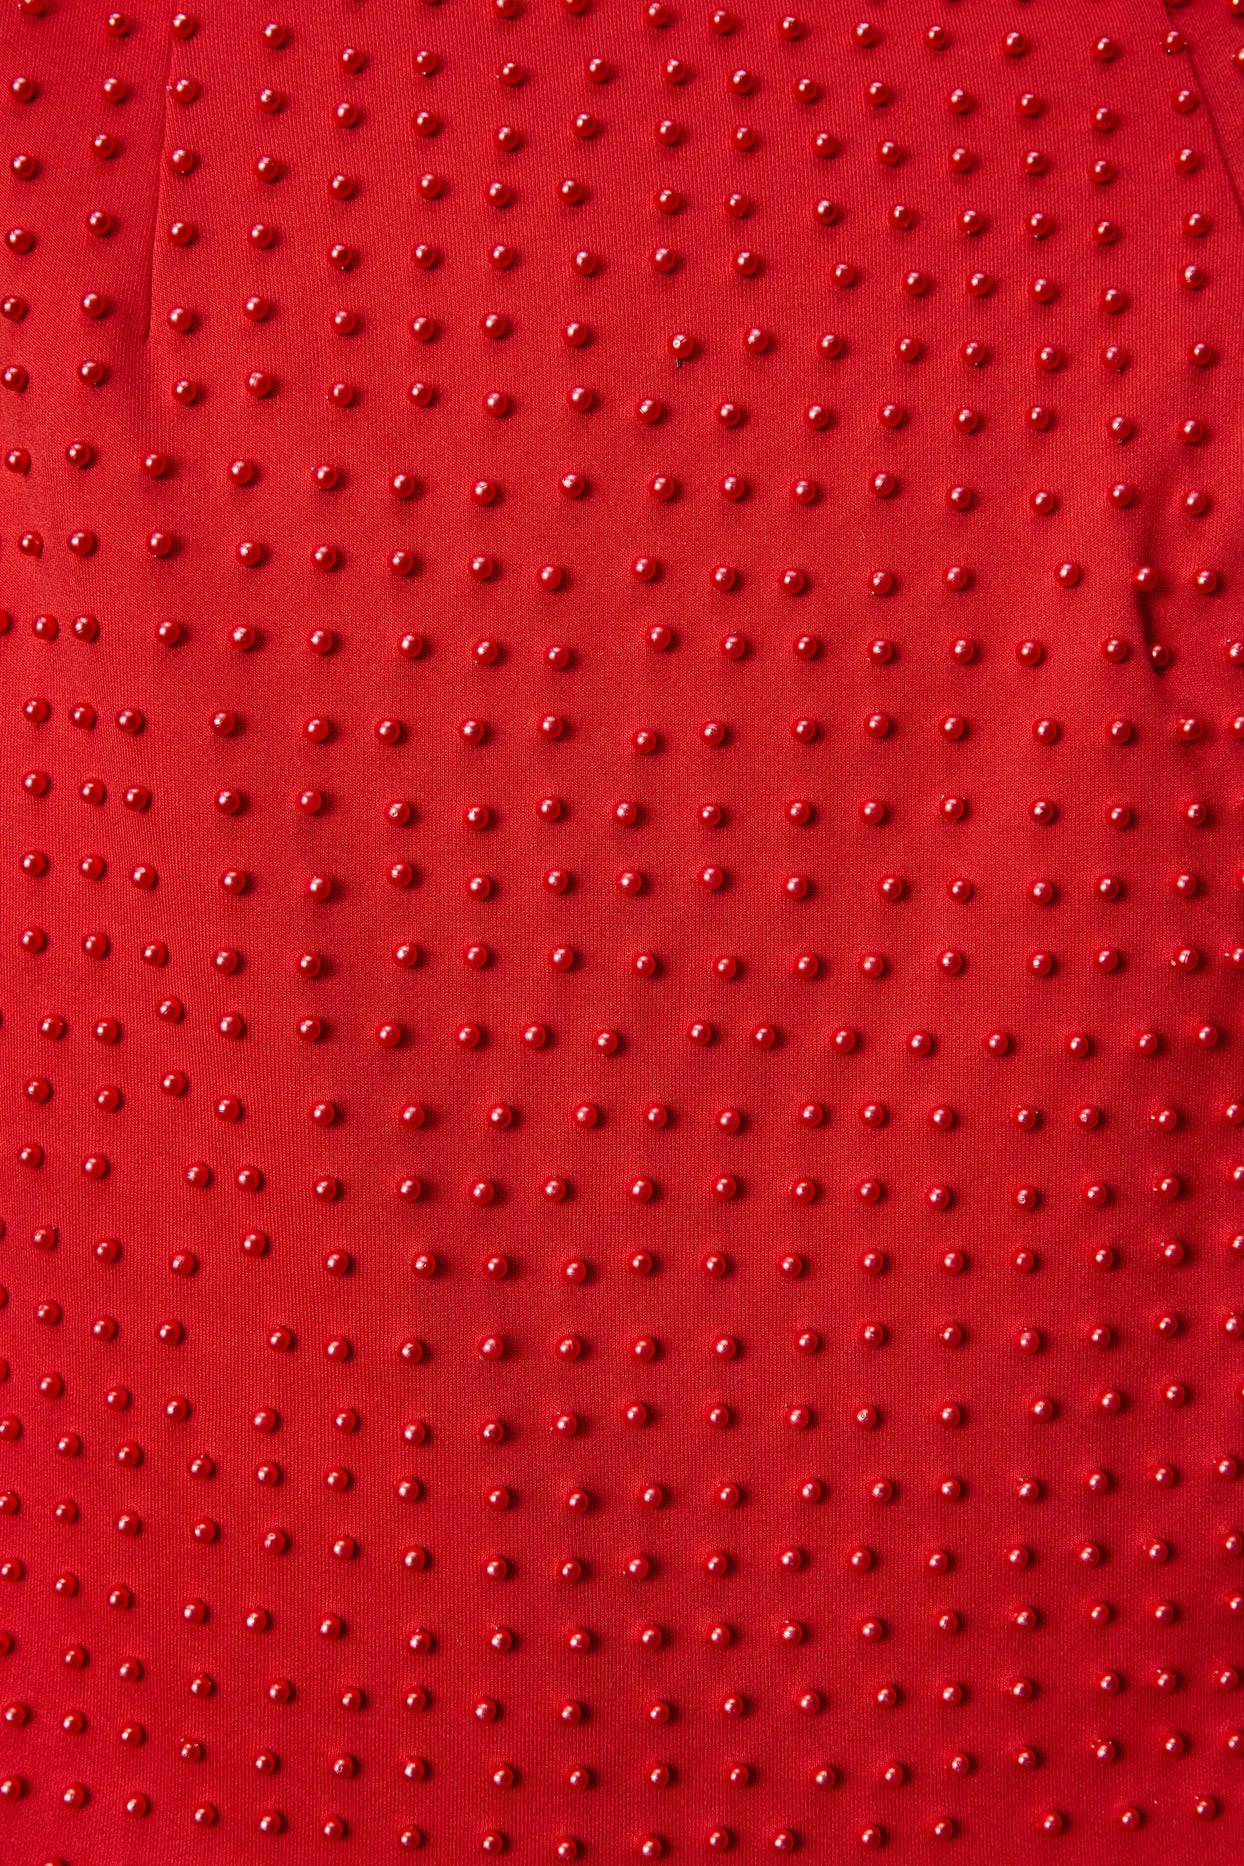 Minissaia embelezada ponto a ponto em vermelho